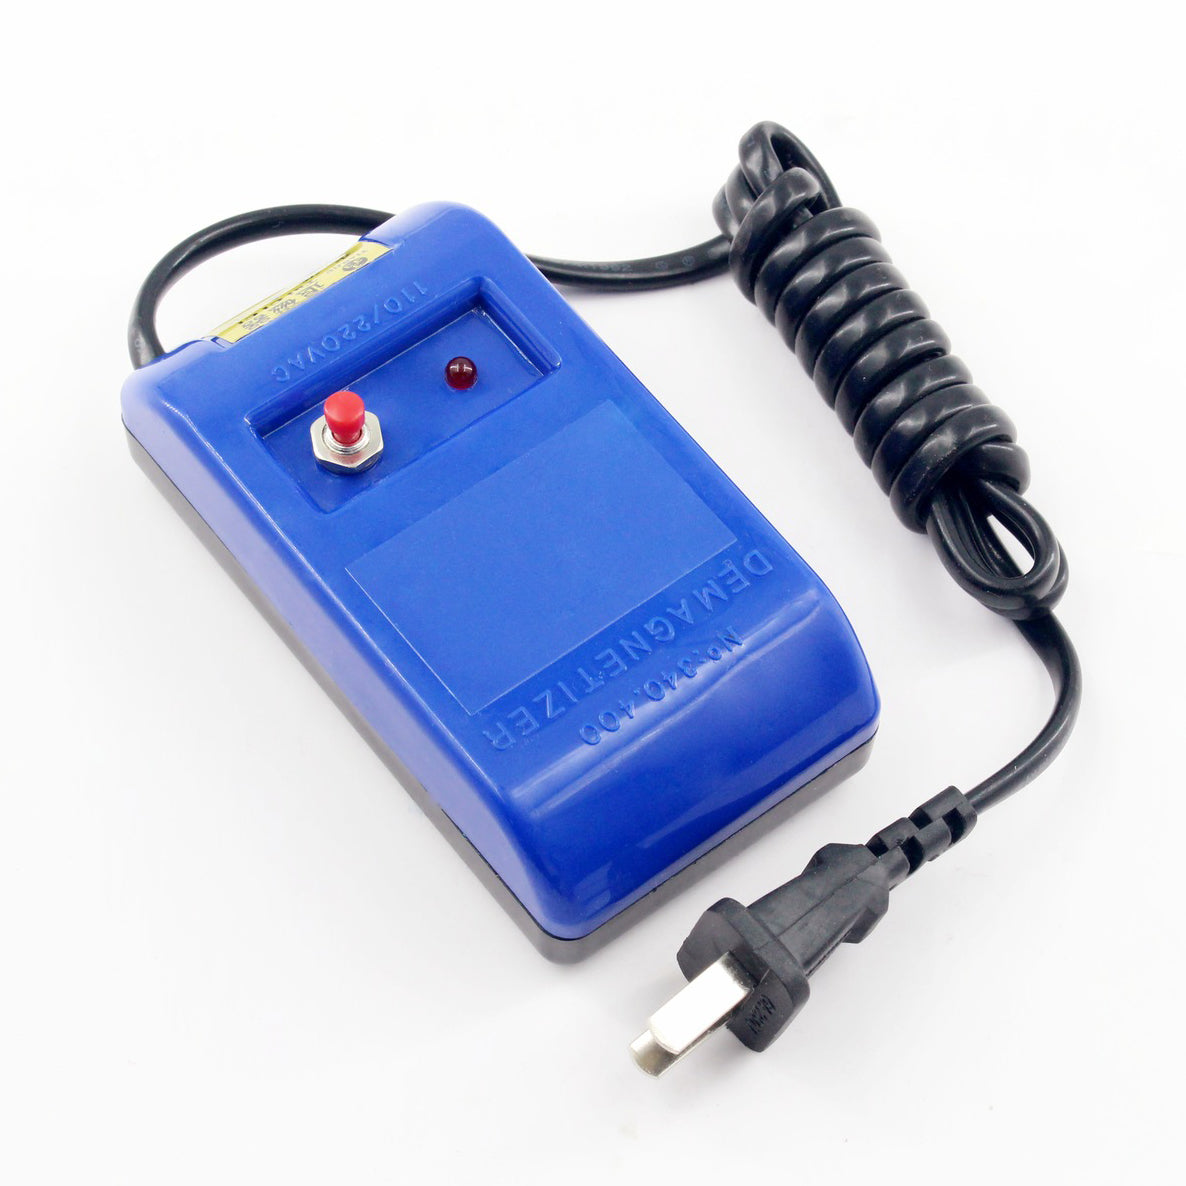 Watch Repair Screwdriver Tweezers Electrical Demagnetise Demagnetizer Tool - EU Plug